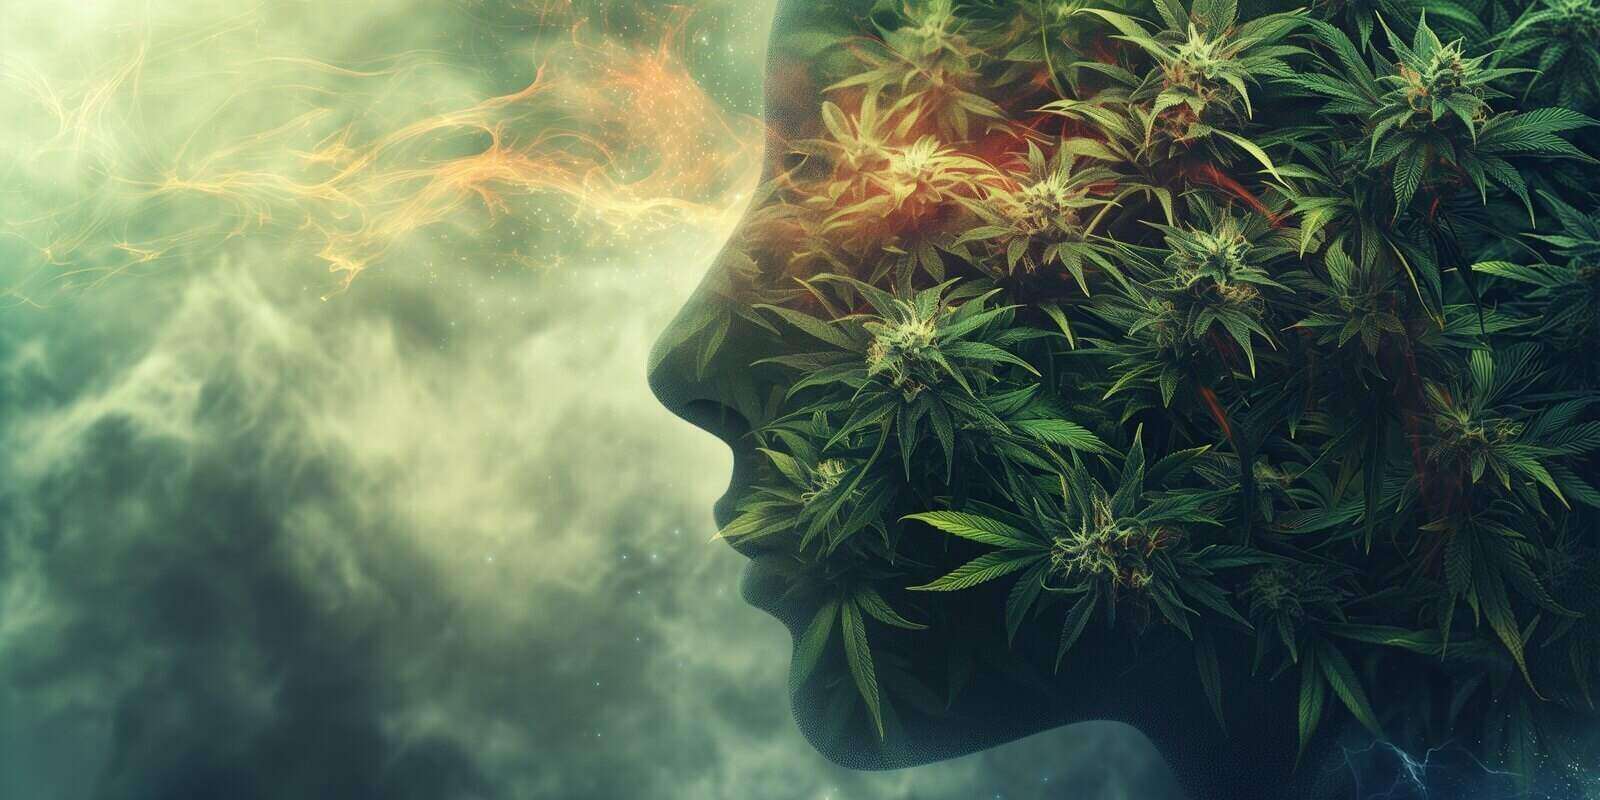 face profile filled with hemp leaves symbolizes marijuana use